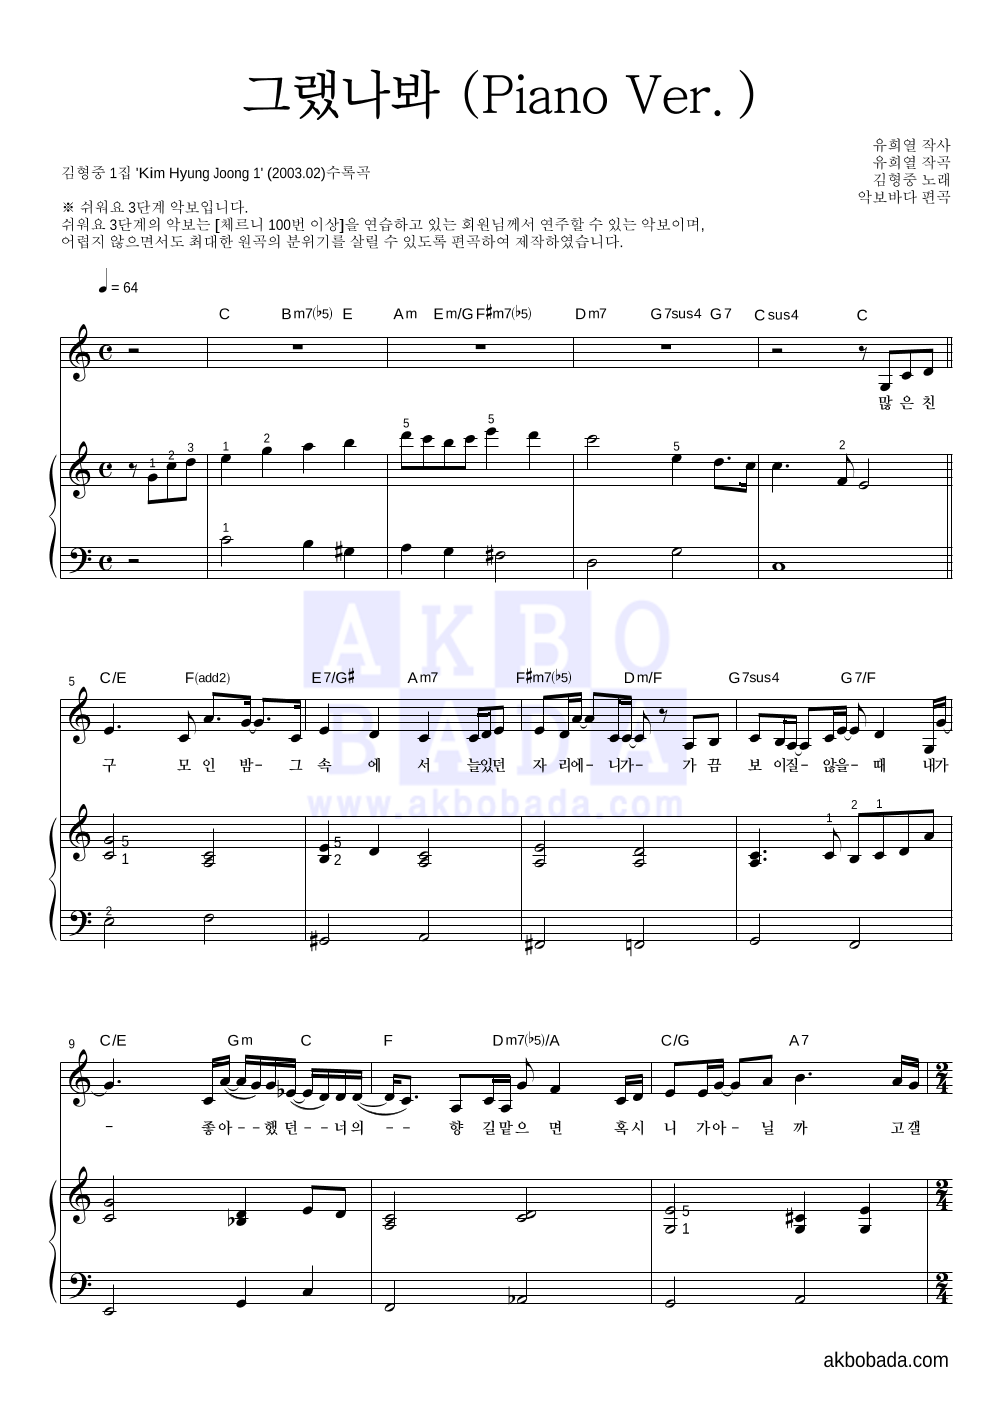 김형중 - 그랬나봐 (Piano Ver.) 피아노3단-쉬워요 악보 